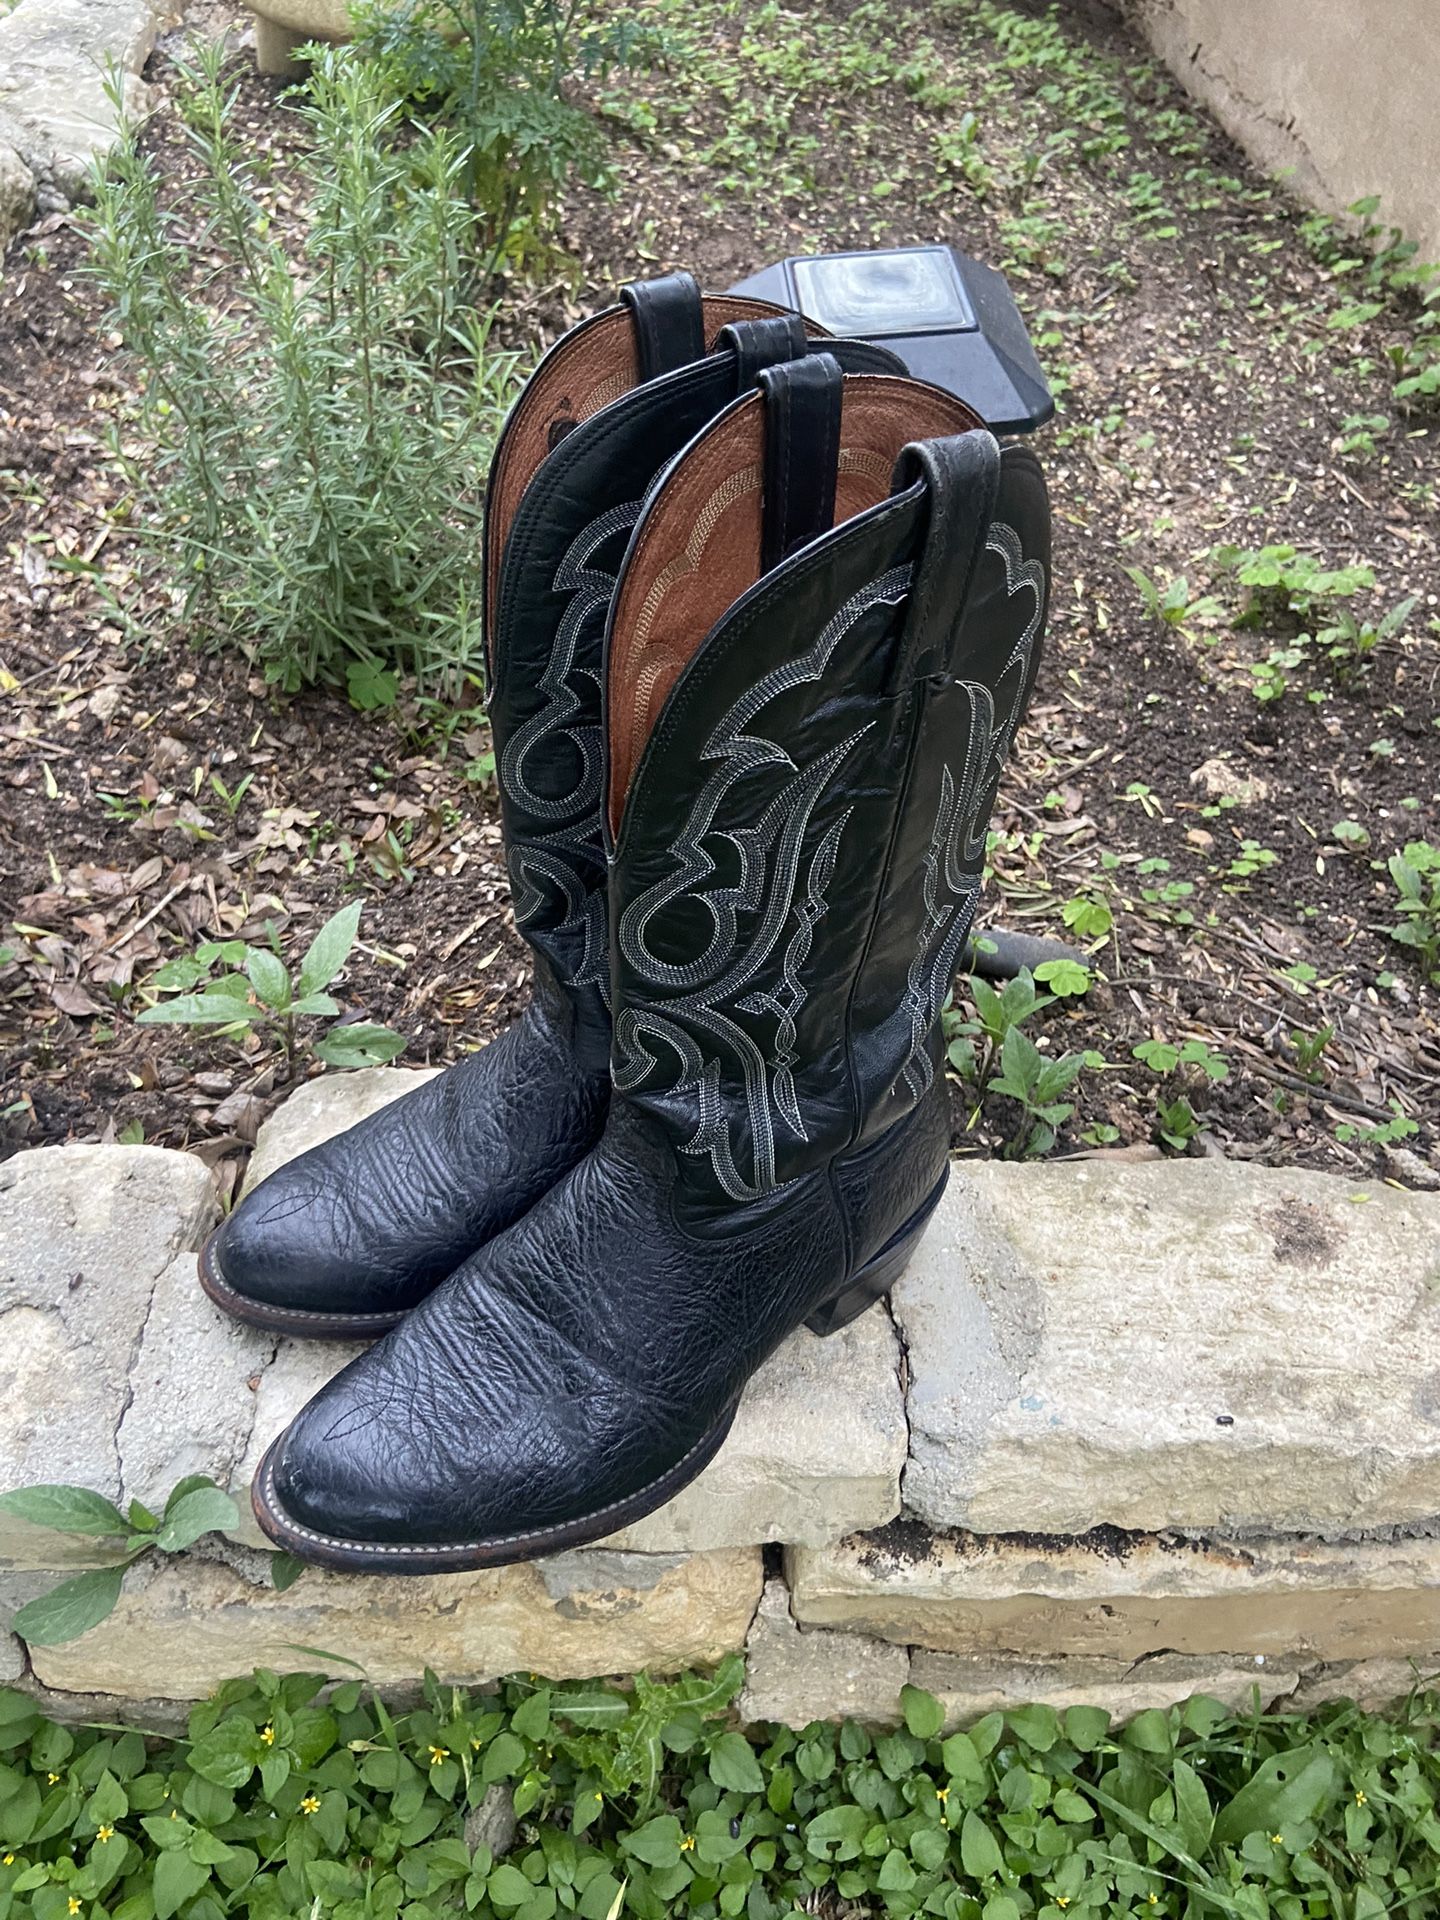 Nocona Mens Boots Size 9.5 